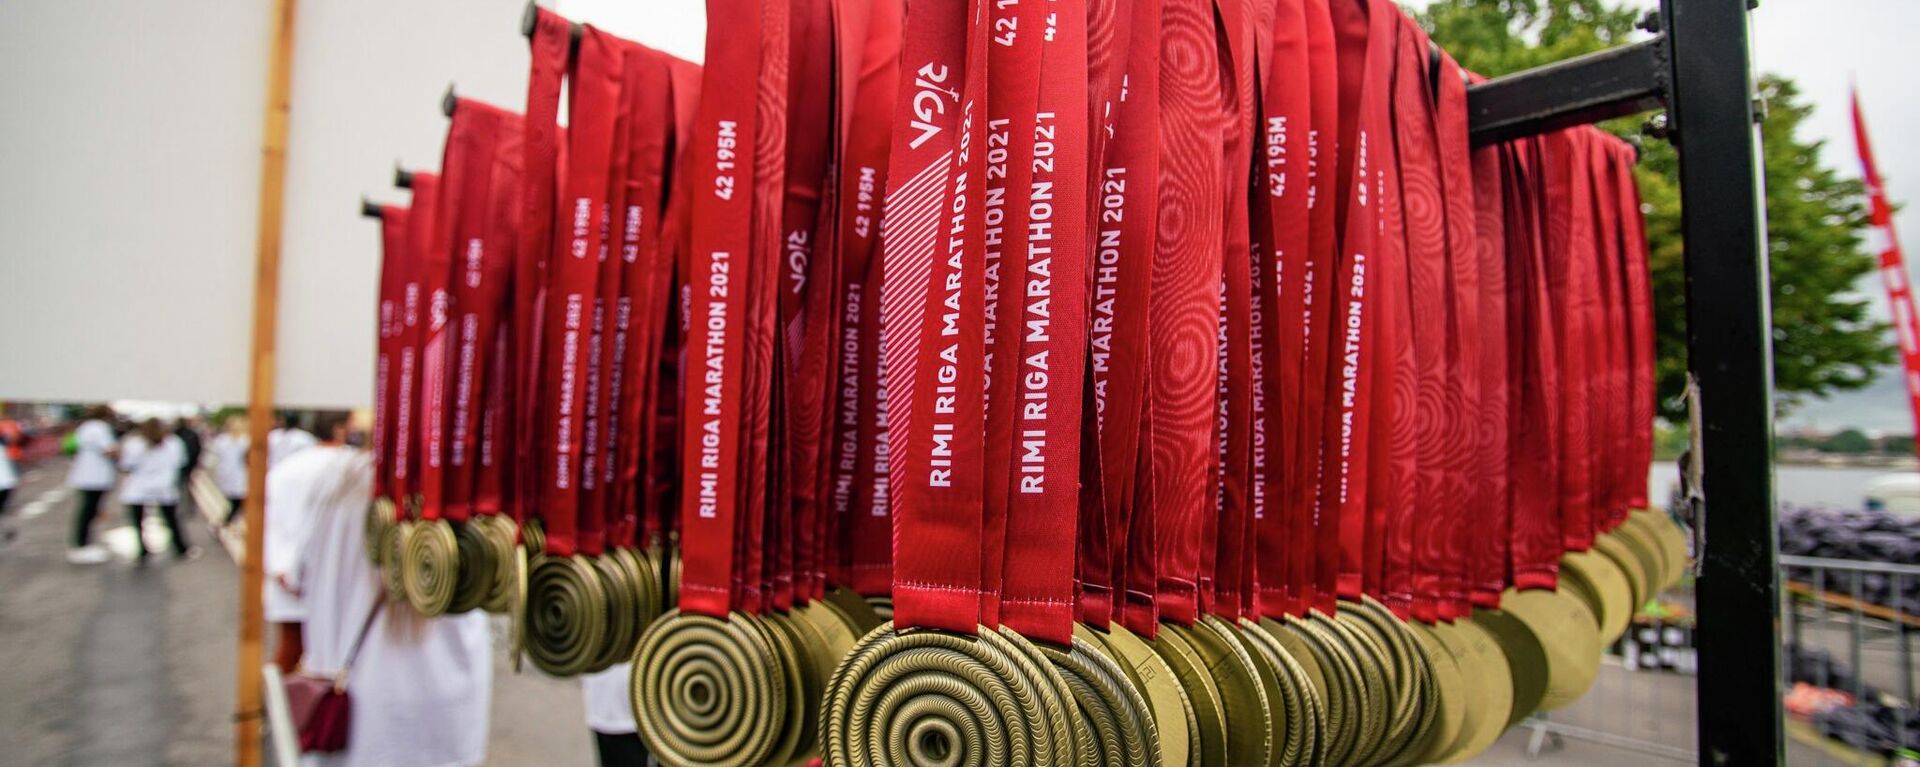 Медали за успешное завершение дистанции Рижского марафона - Sputnik Латвия, 1920, 29.08.2021